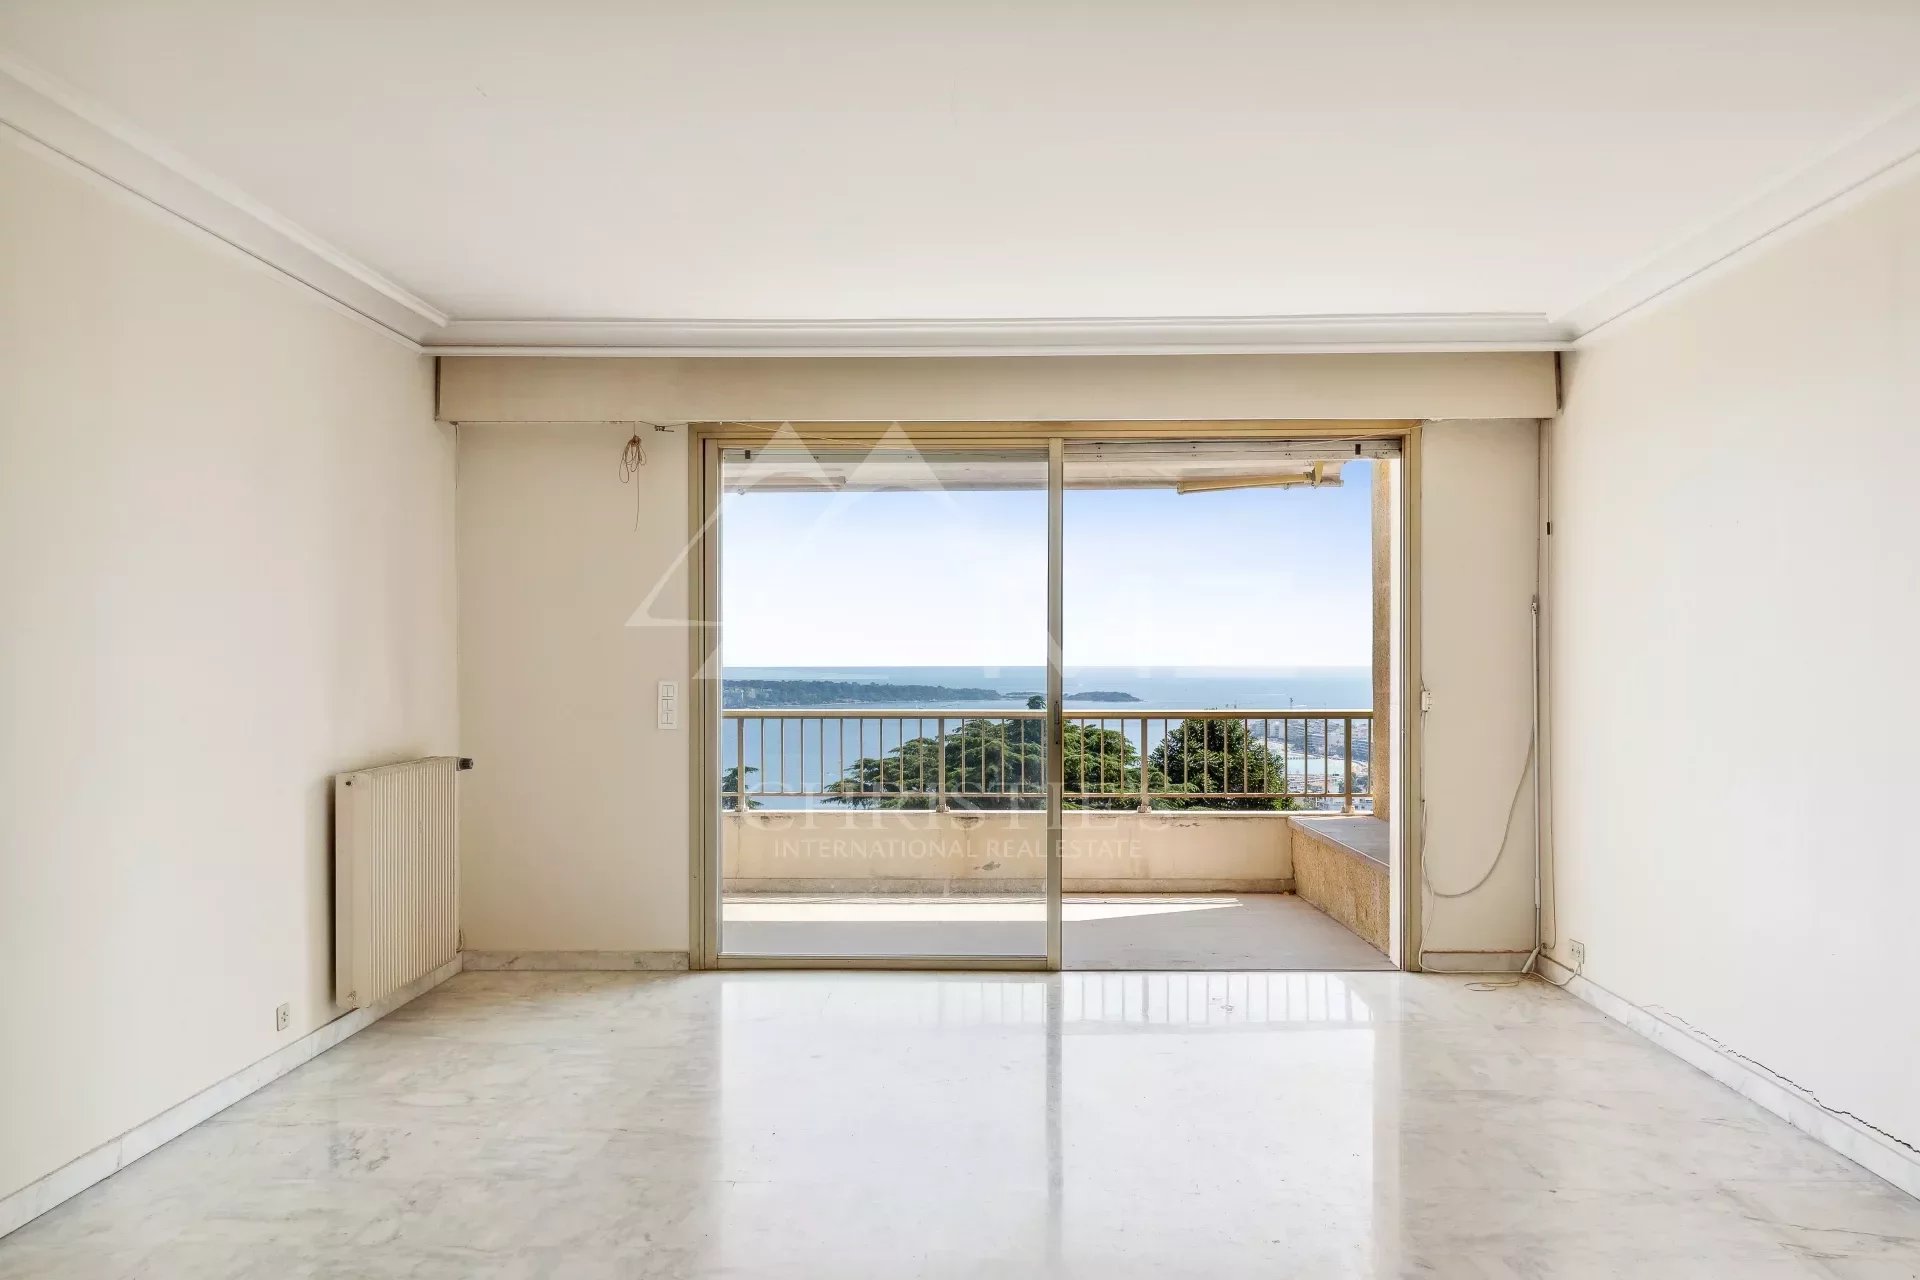 Gelegenheit - Apartment mit Meerblick in einer prestigeträchtigen Residenz